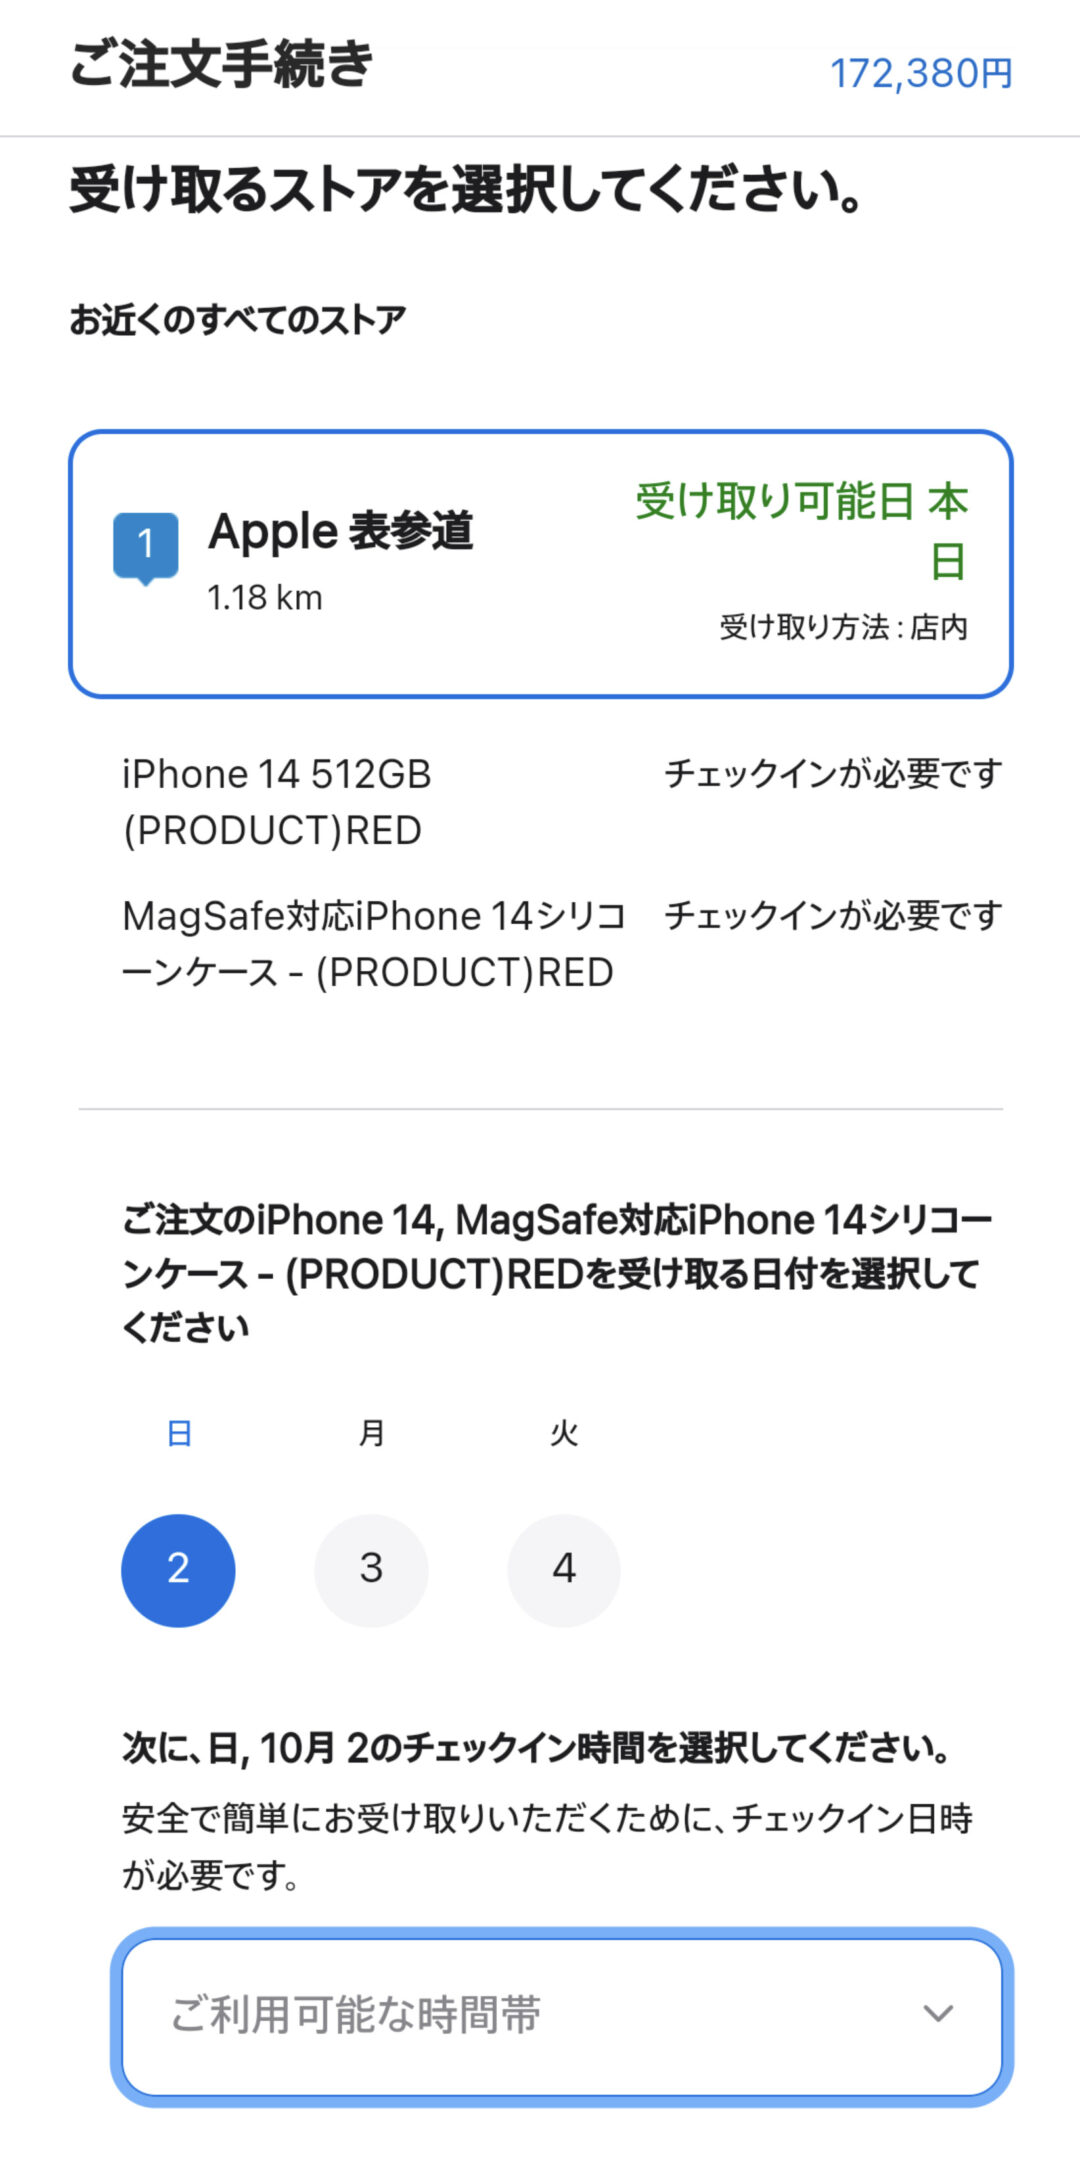 AppleオンラインストアにてiPhone購入する画面。受け取り店舗とチェックイン時間の選択。